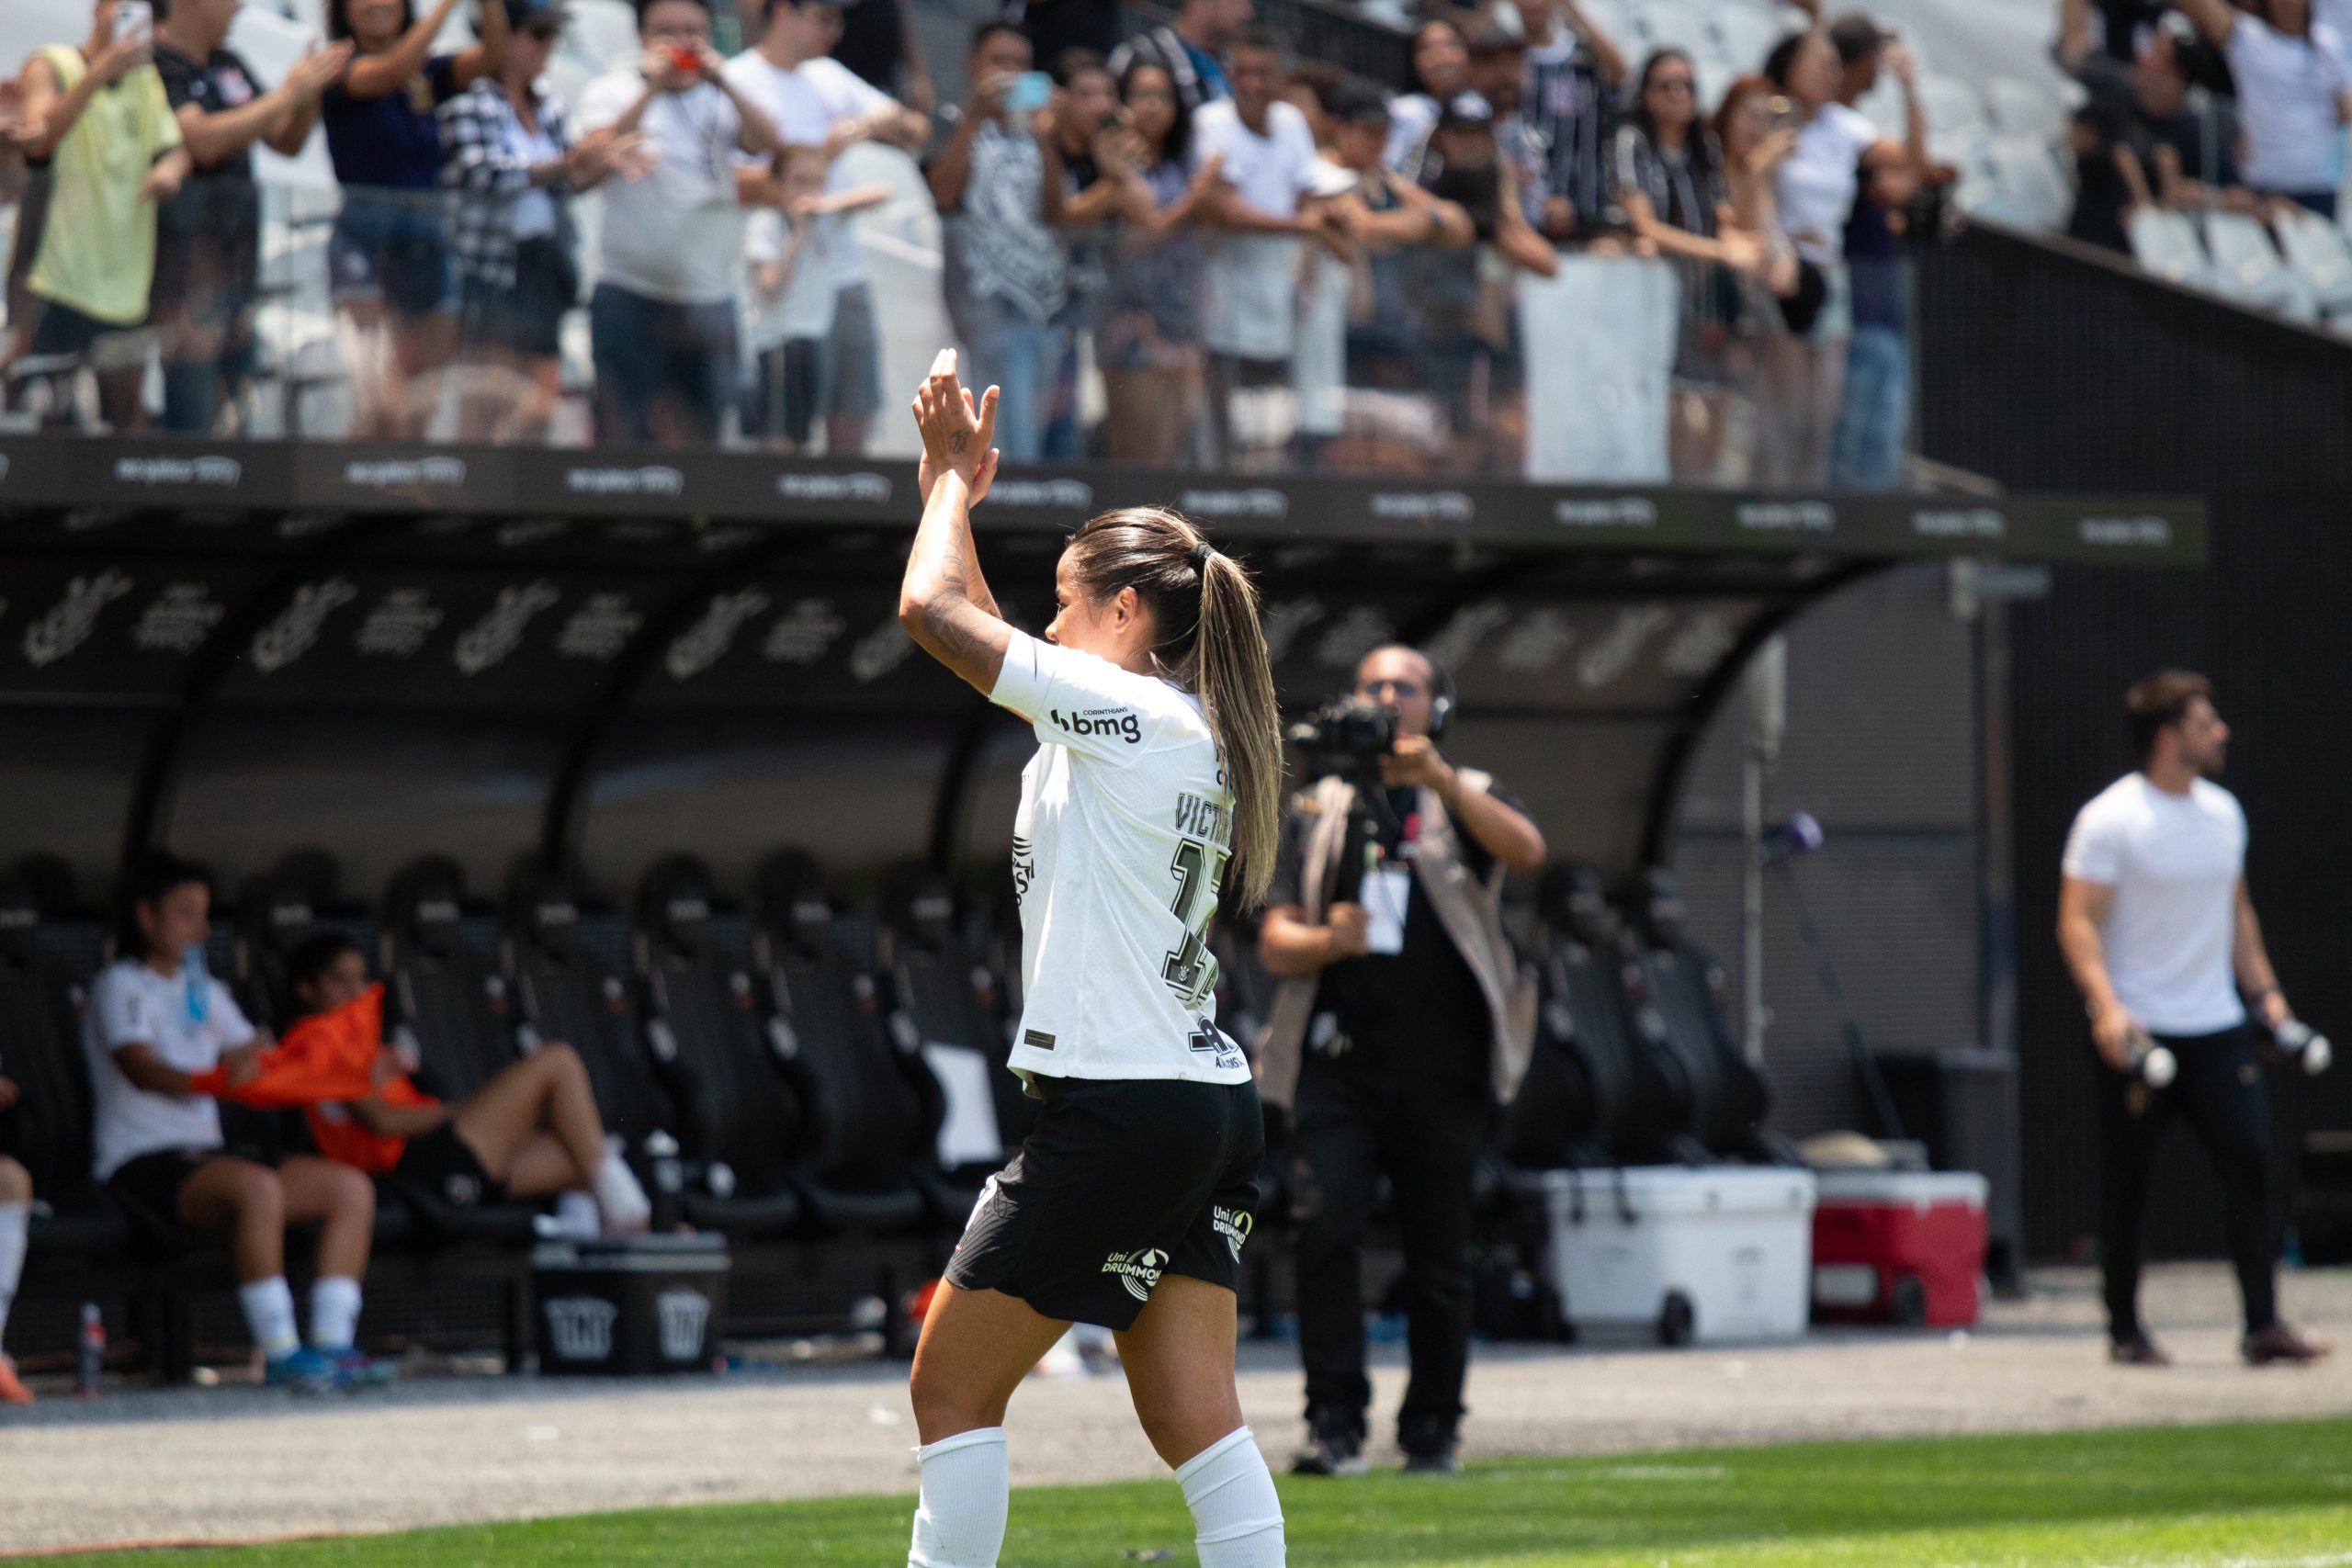 Adriana marca décimo gol pelo Corinthians no ano e encosta em